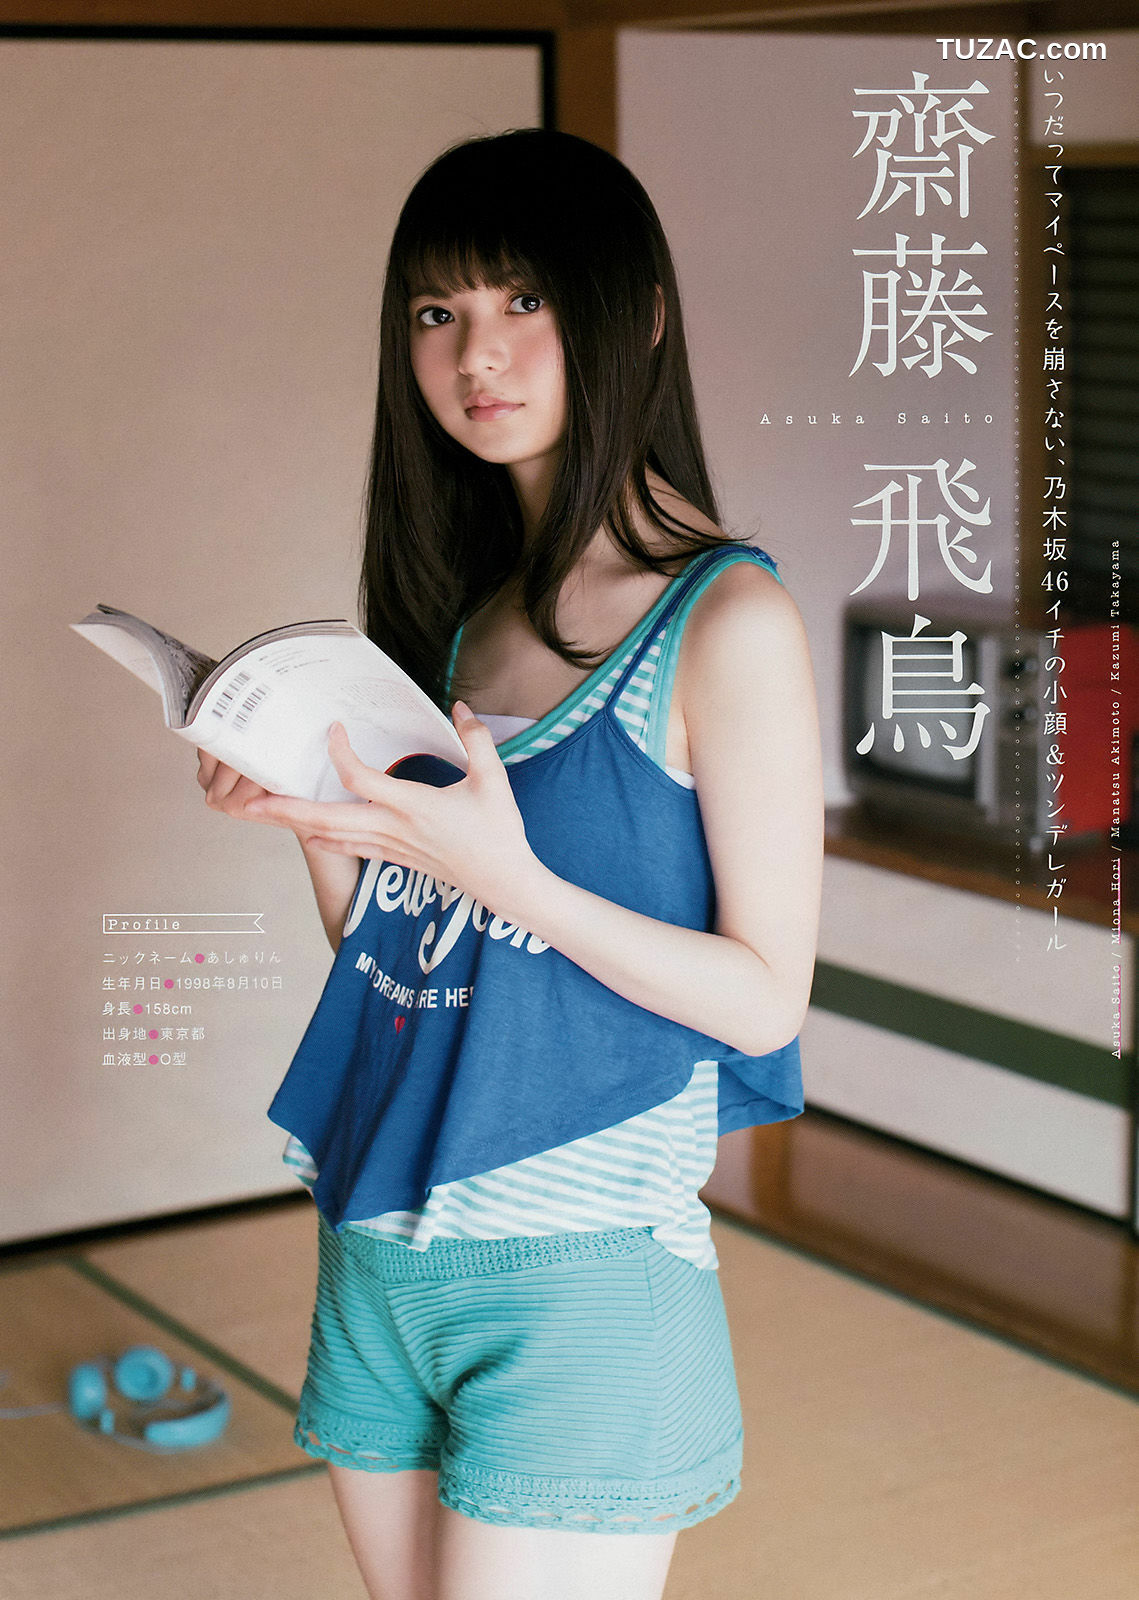 Young Magazine杂志写真_ 乃木坂46 2017年No.22 写真杂志[16P]